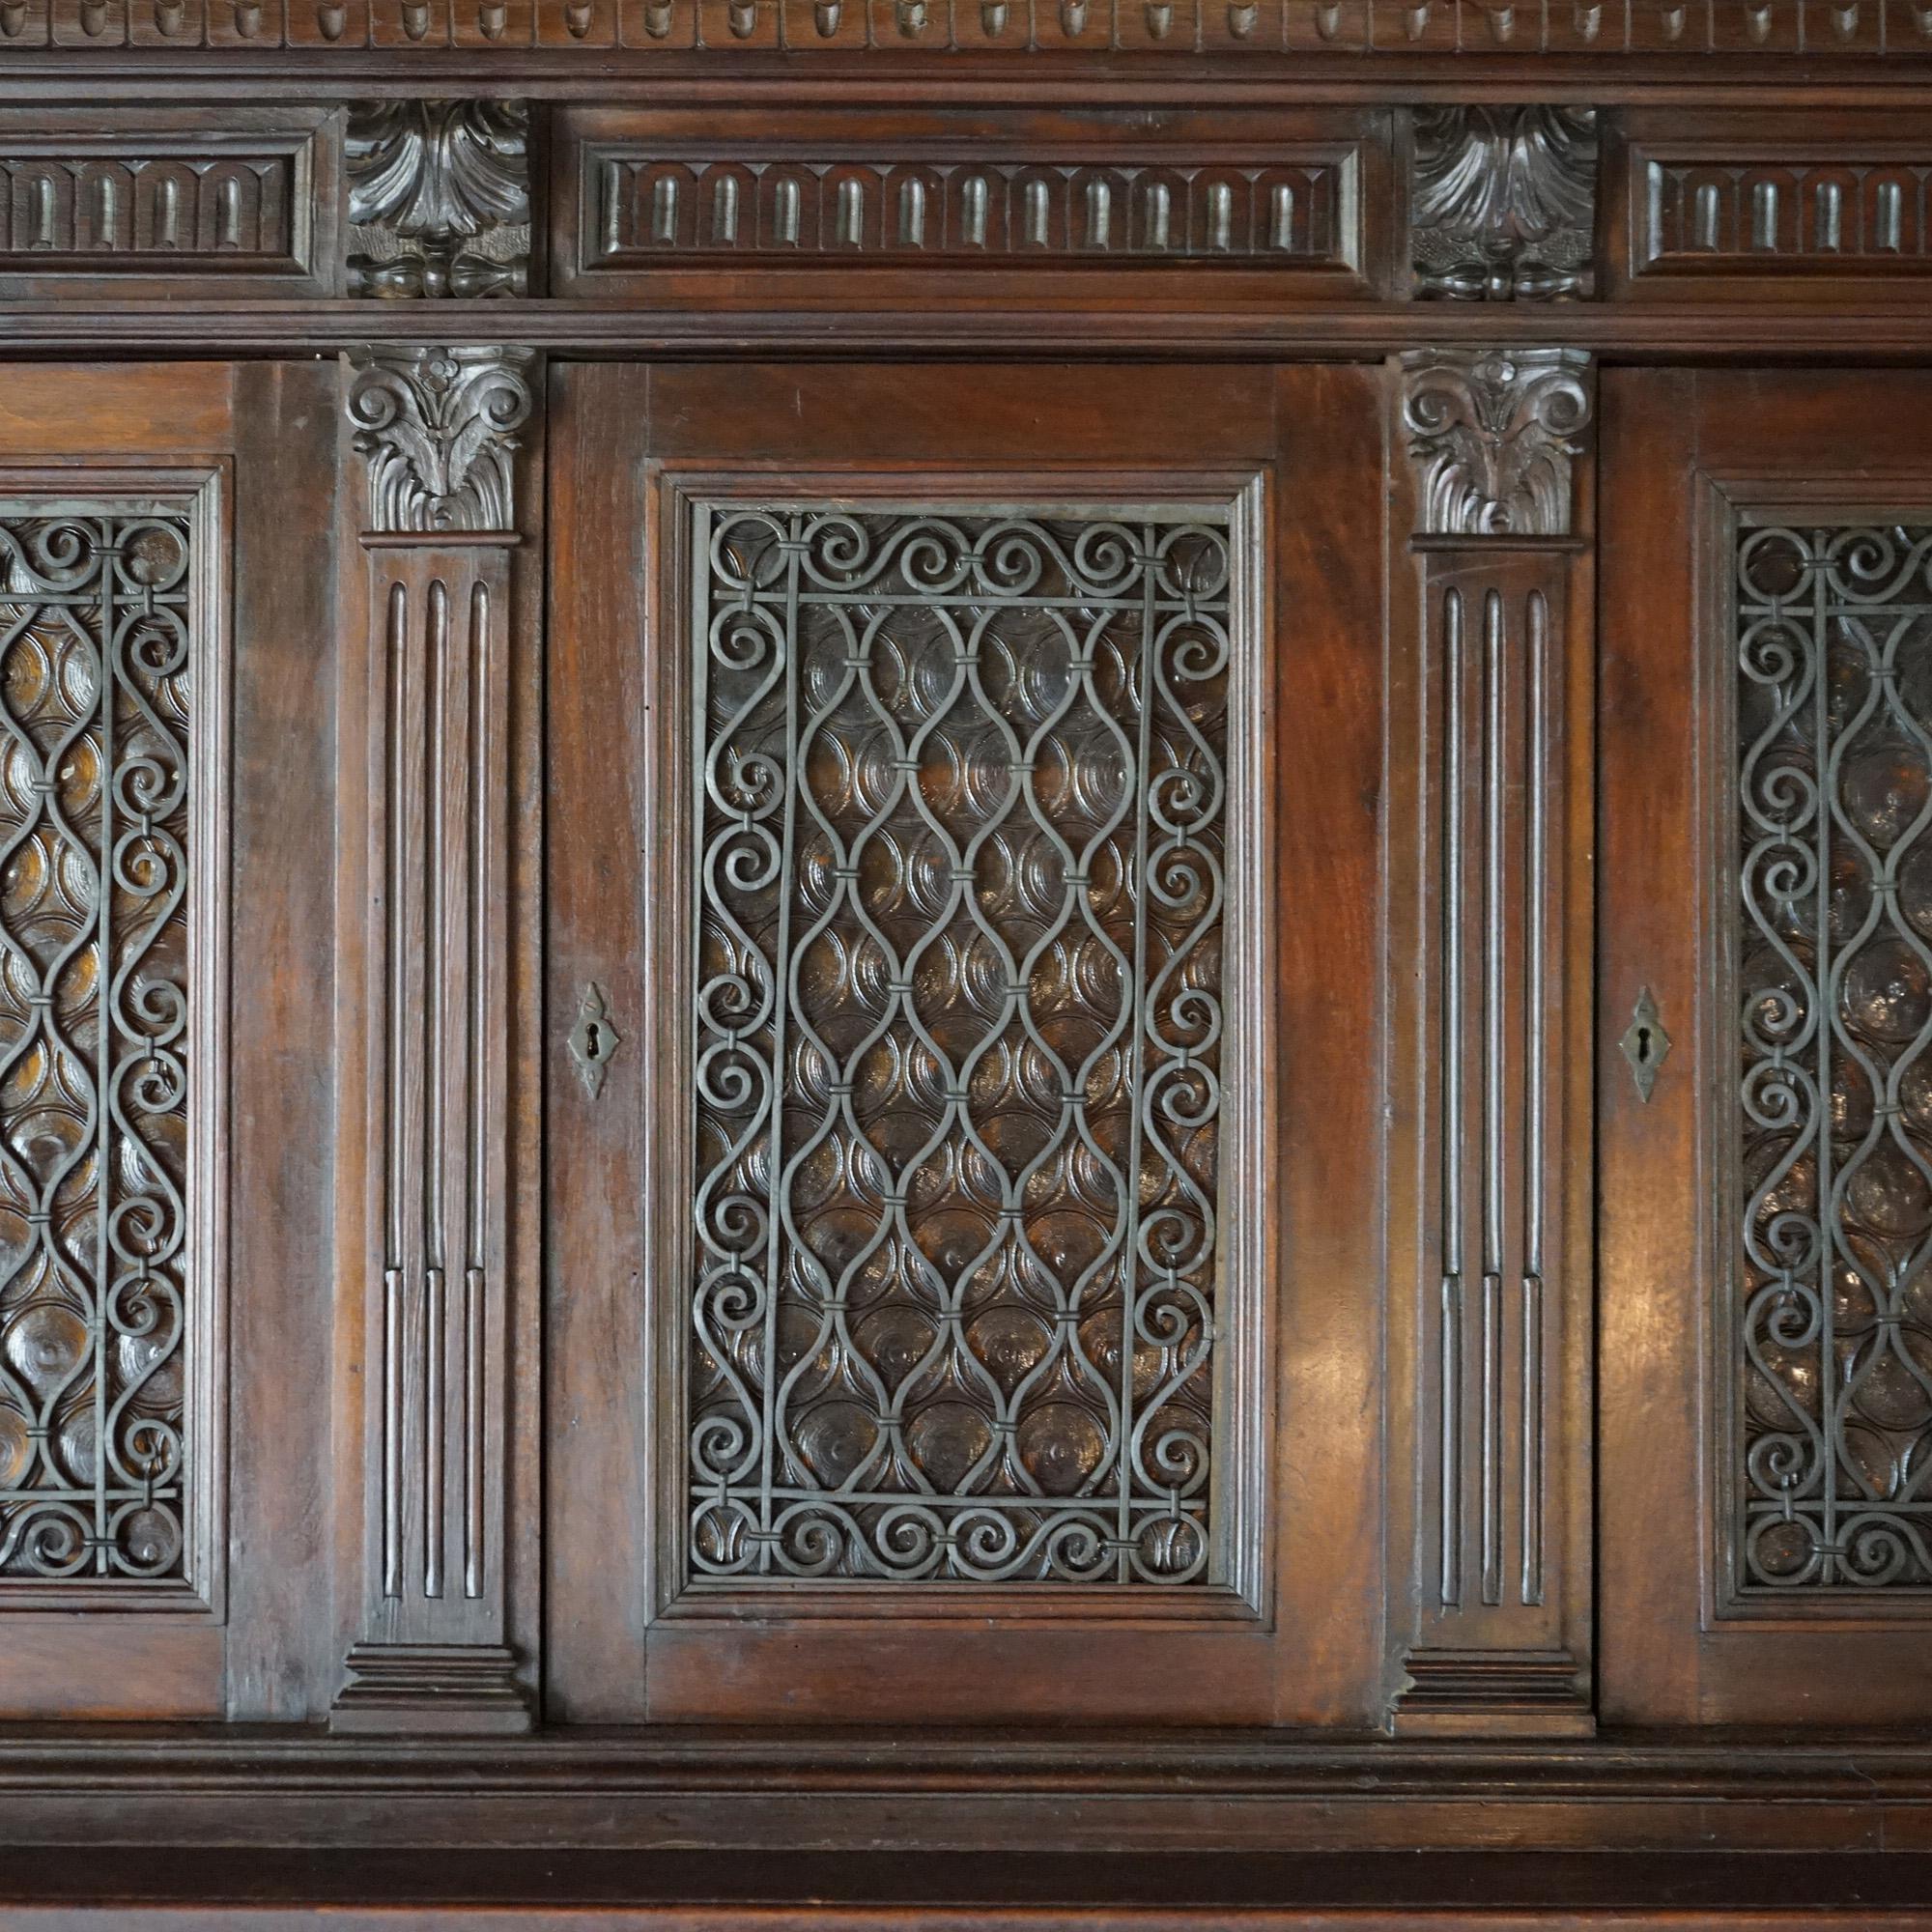 Un ancien tableau de chasse baroque en noyer avec un corps supérieur comportant trois portes vitrées avec des grilles en fer forgé et s'ouvrant sur un intérieur divisé et étagé ; un corps inférieur avec trois tiroirs supérieurs au-dessus de trois